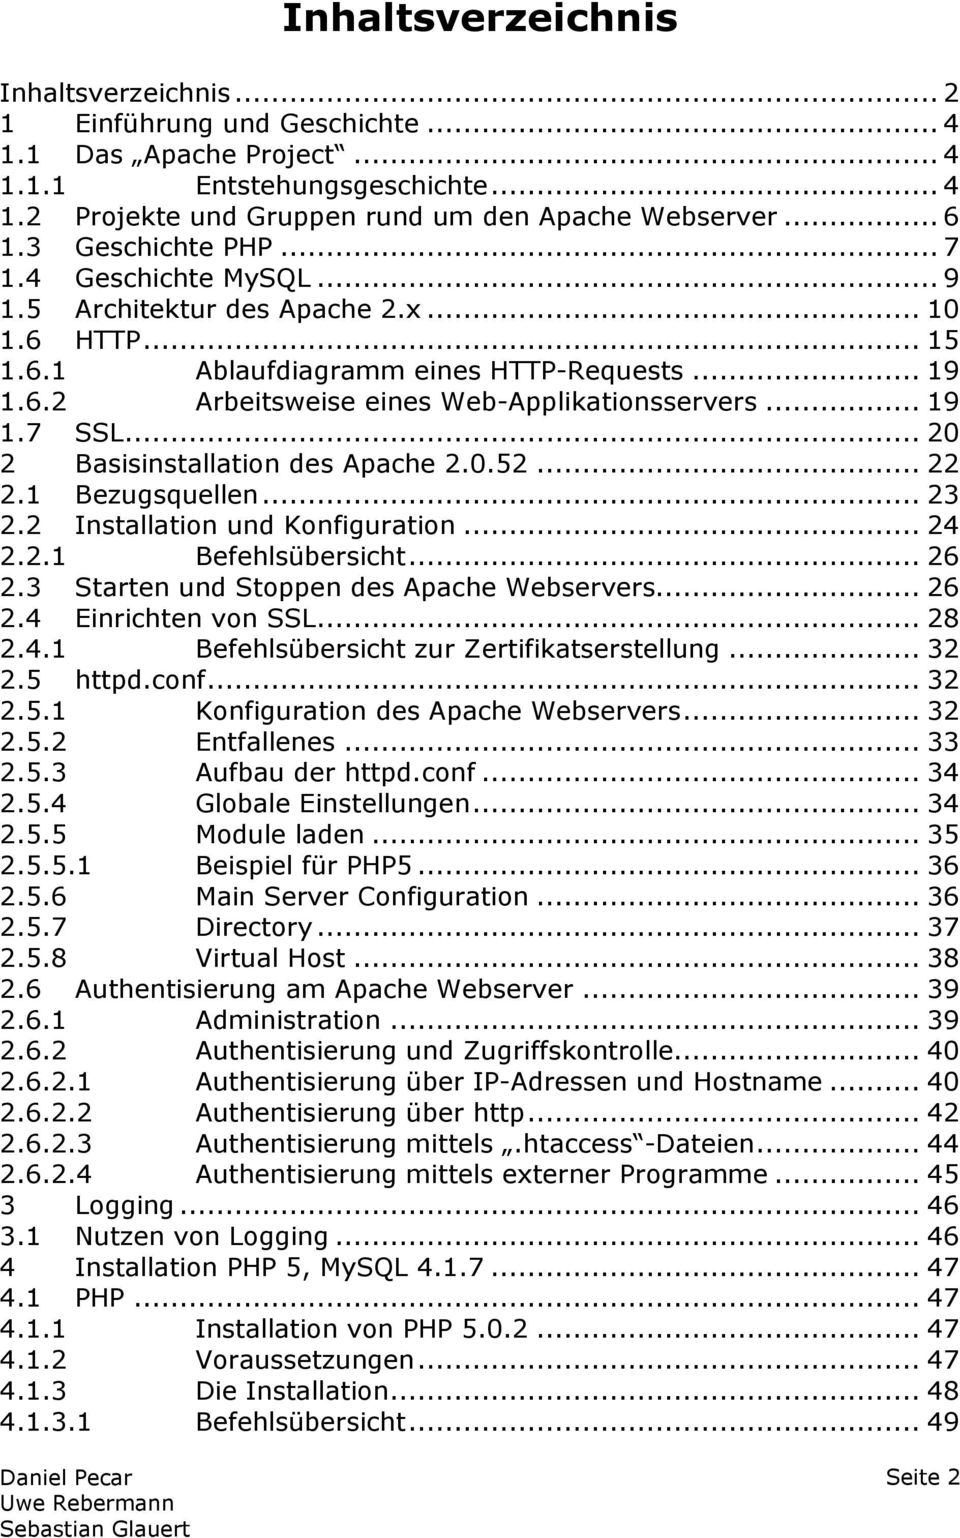 .. 19 1.7 SSL... 20 2 Basisinstallation des Apache 2.0.52... 22 2.1 Bezugsquellen... 23 2.2 Installation und Konfiguration... 24 2.2.1 Befehlsübersicht... 26 2.